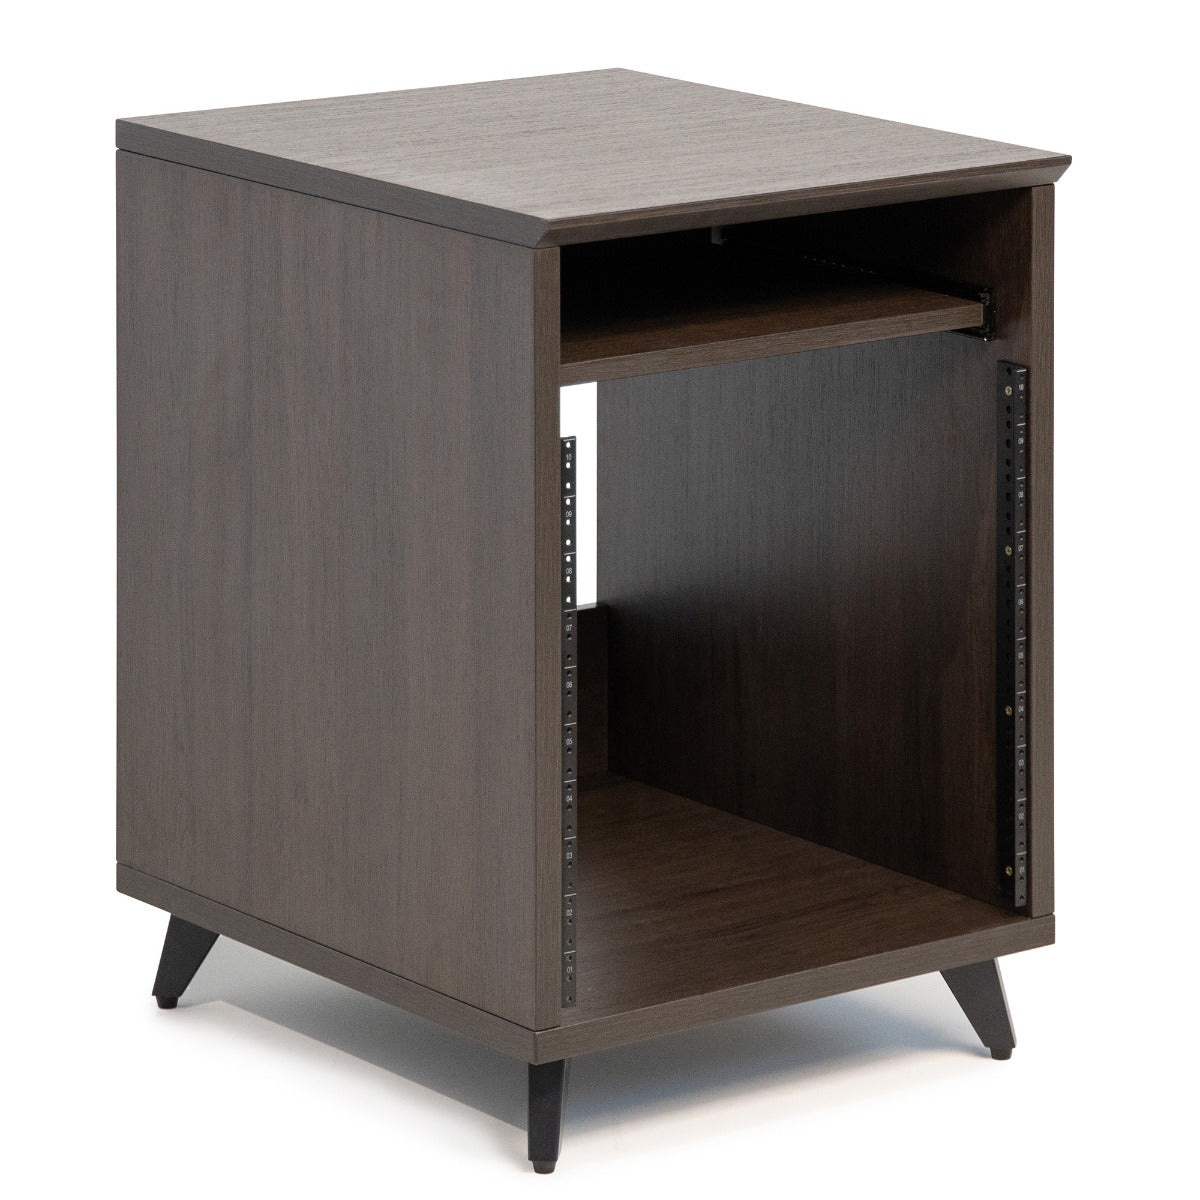 Right angled image of the Gator Frameworks Elite Series Furniture Desk 10U Rack - Brown